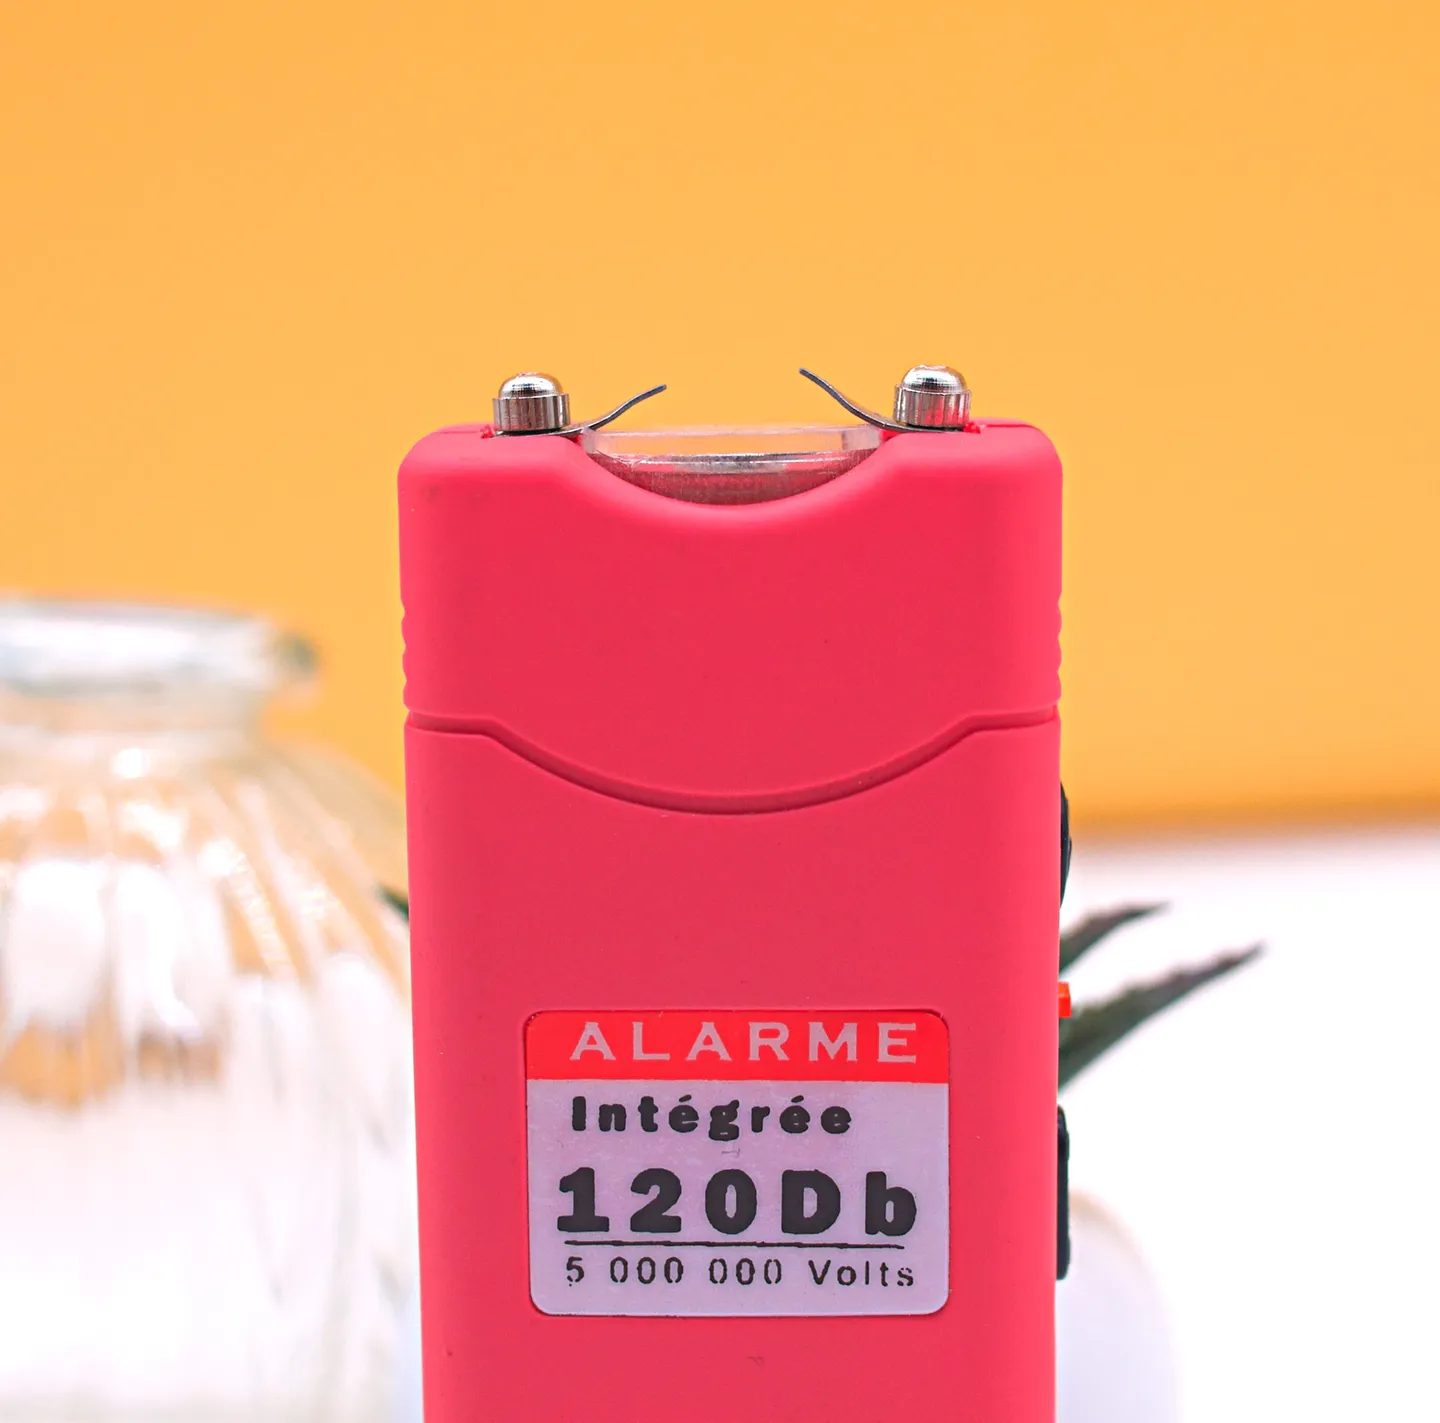 Elektroschocker & Taser - Der rosa Taschenschreck mit integriertem Alarm